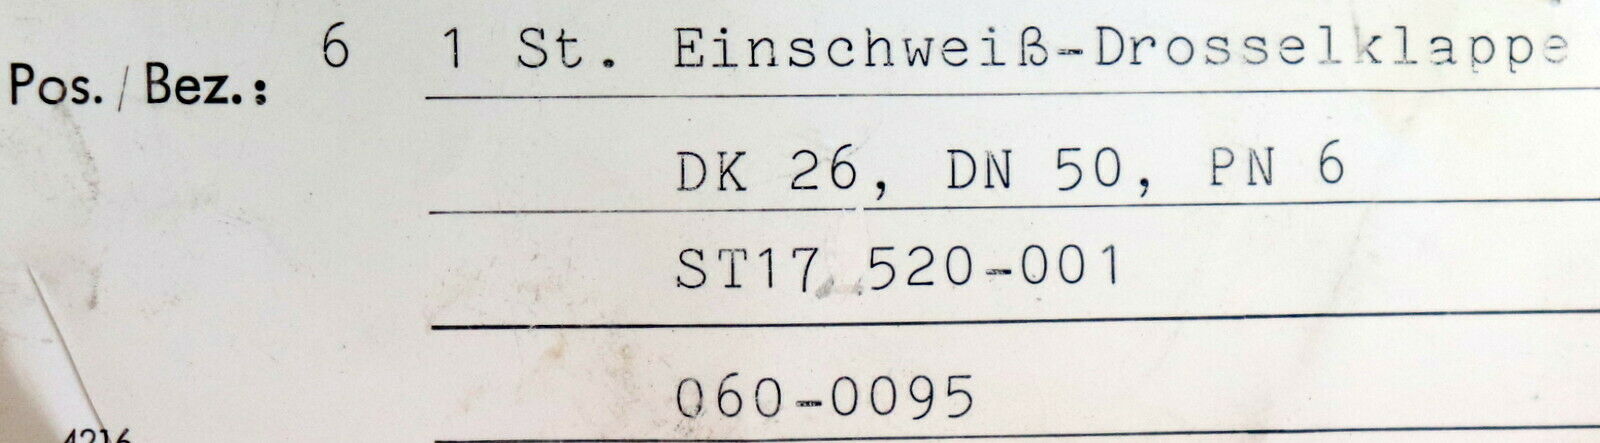 KRAFTWERK UNION AG Einschweiss-Drosselklappe DN50 PN6 DK26 - ST35.8